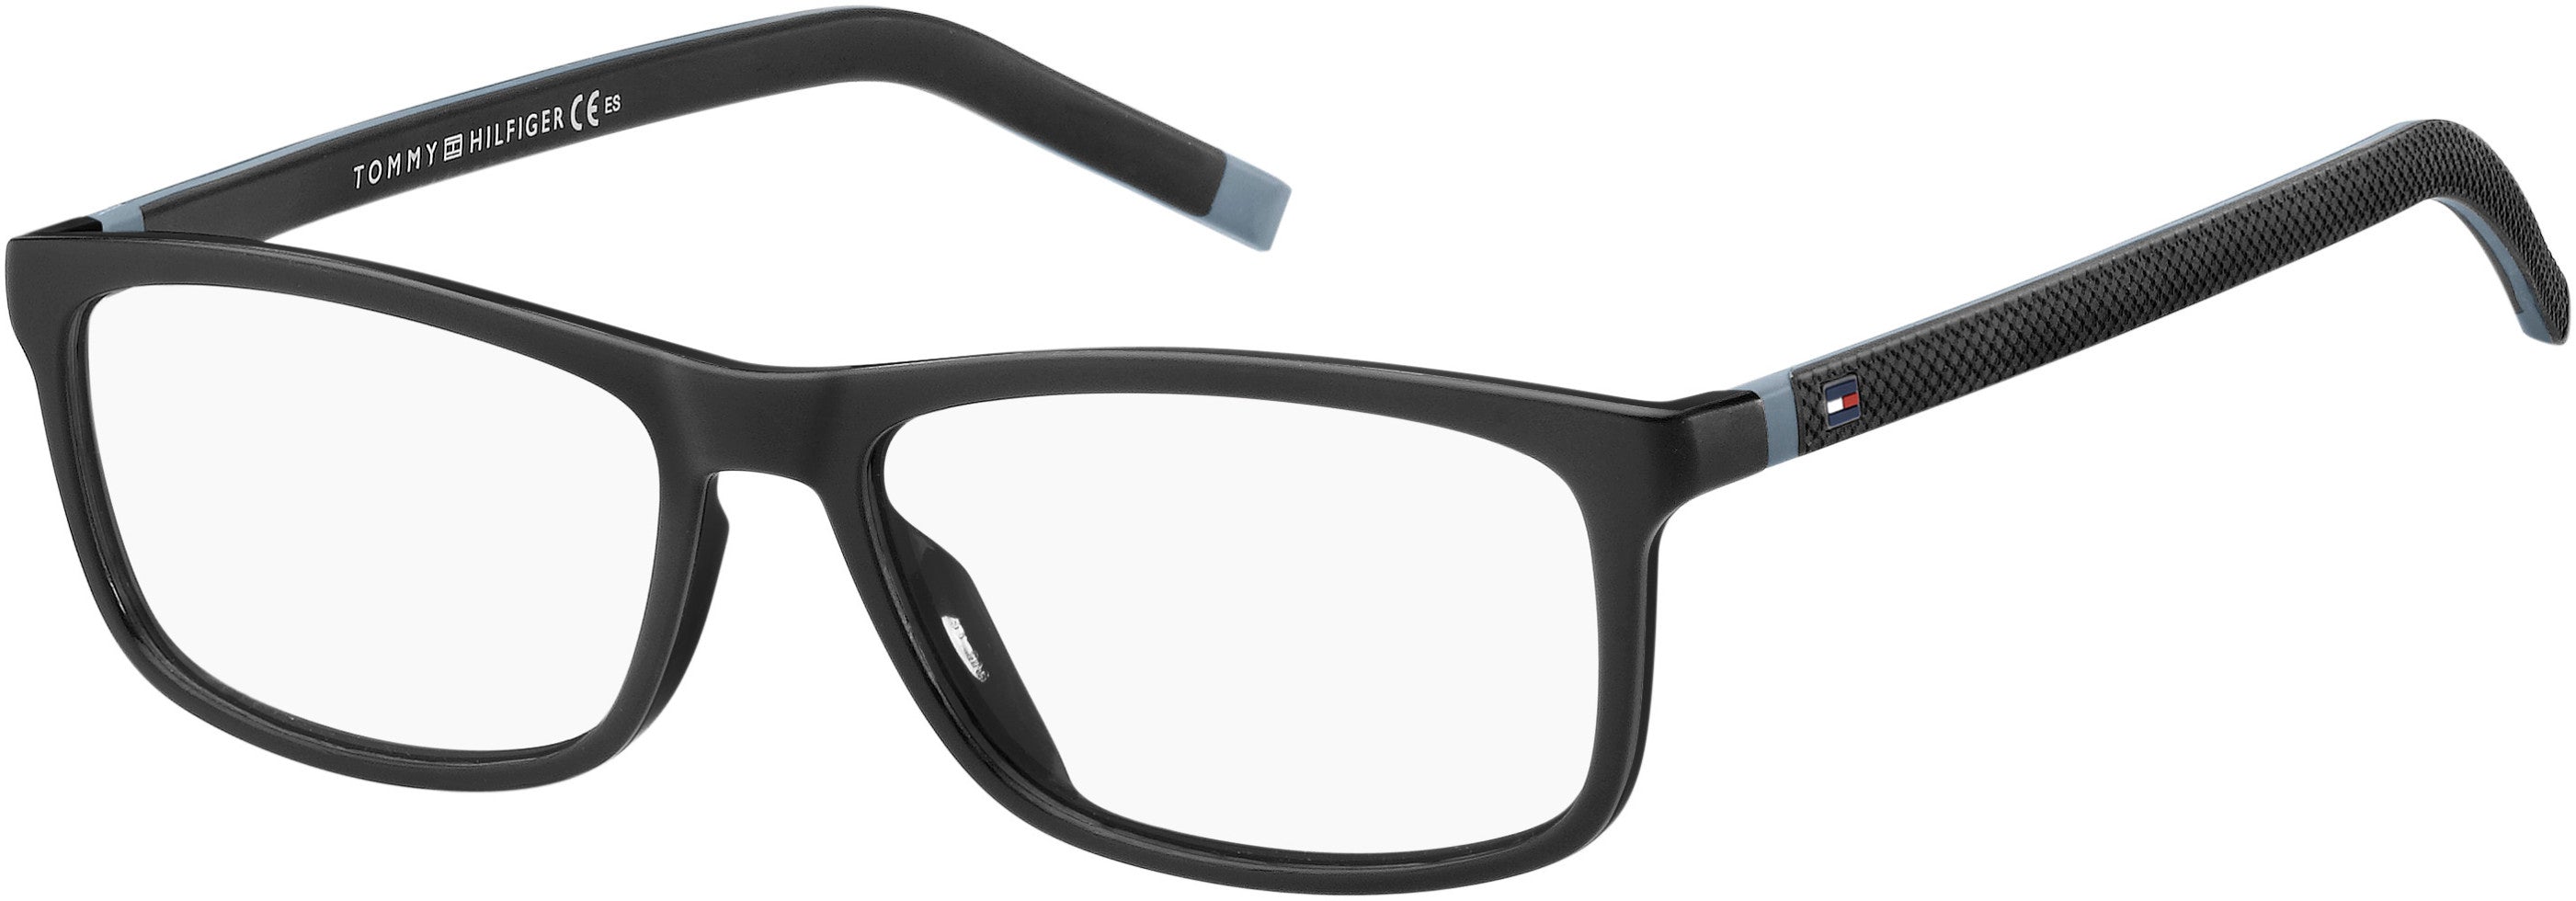 Tommy Hilfiger T. Hilfiger 1741 Rectangular Eyeglasses 008A-008A  Black Gray (00 Demo Lens)